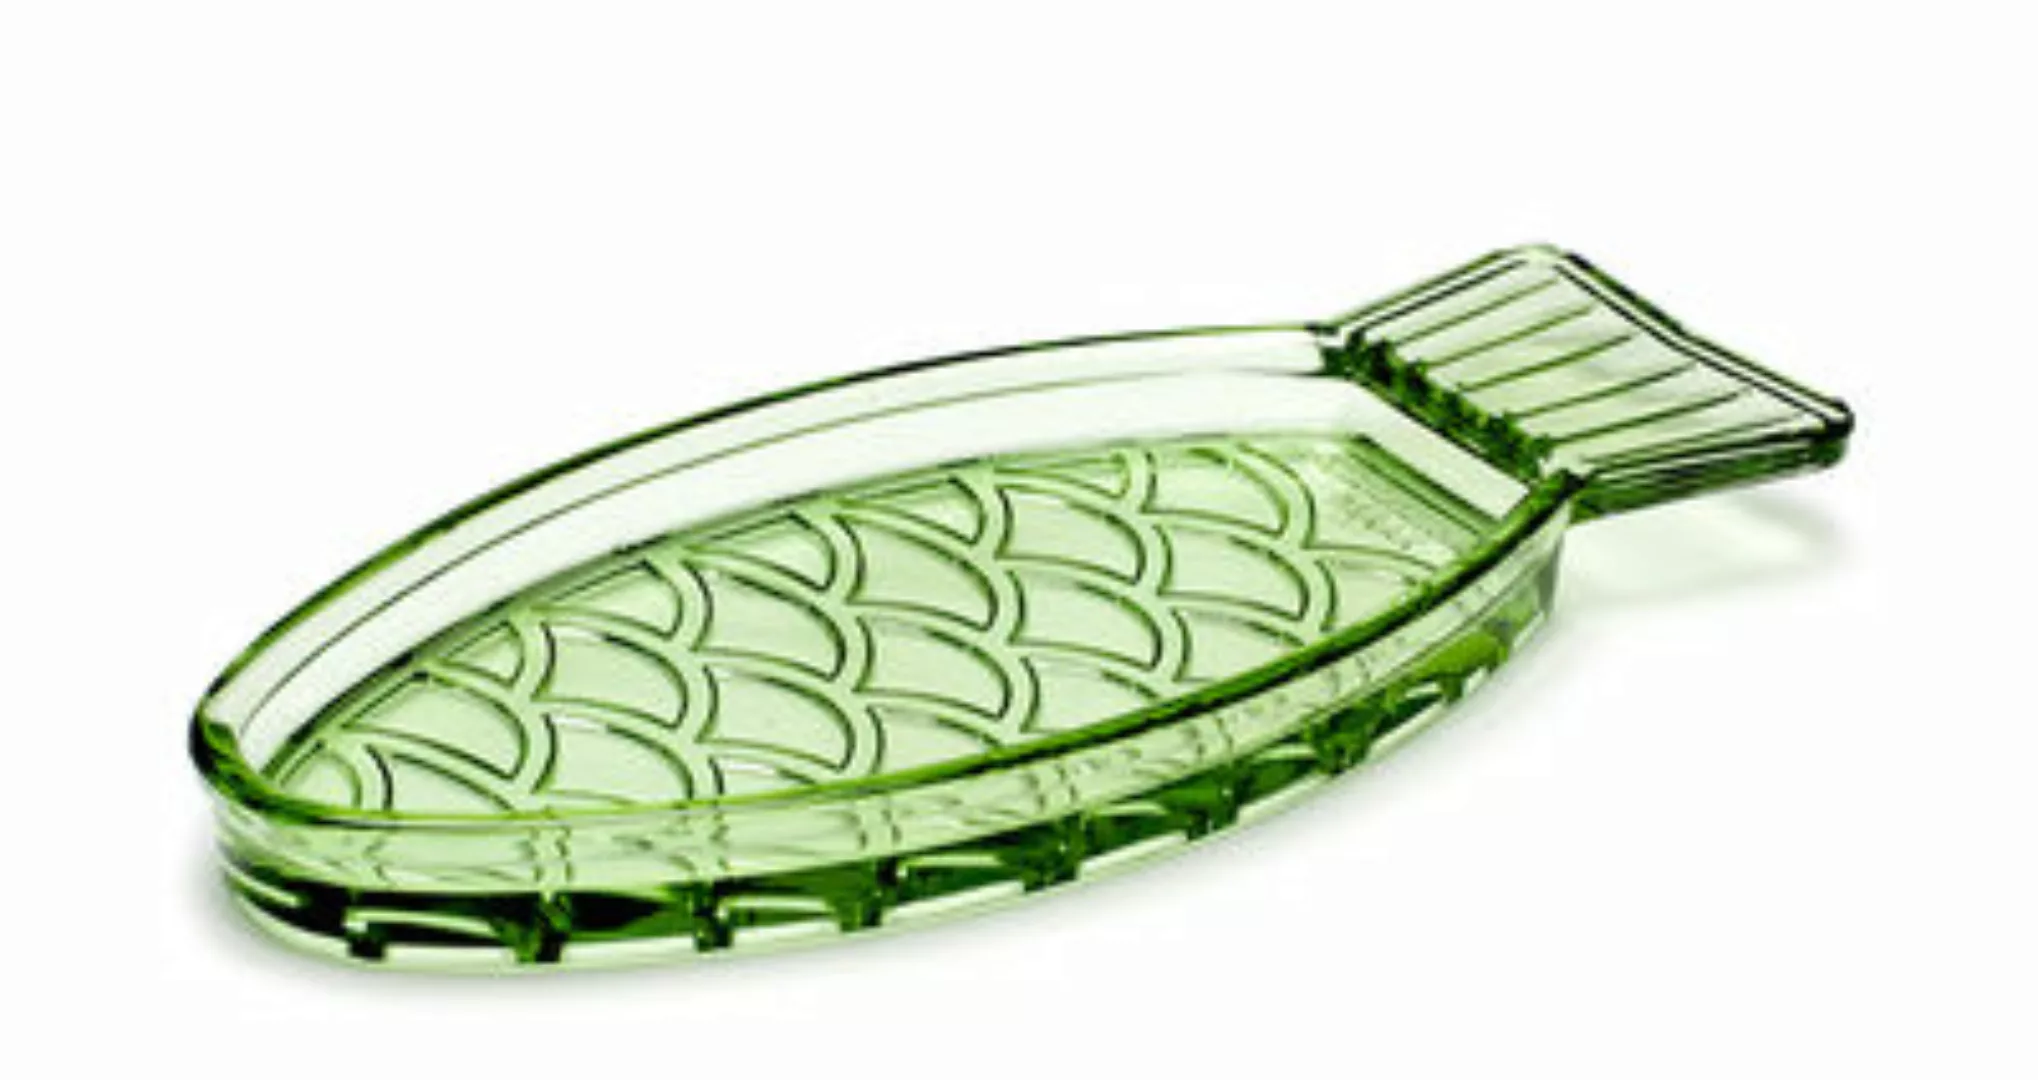 Platte Fish & Fish glas grün Fisch / klein - 23 x 10 cm - Serax - Grün günstig online kaufen